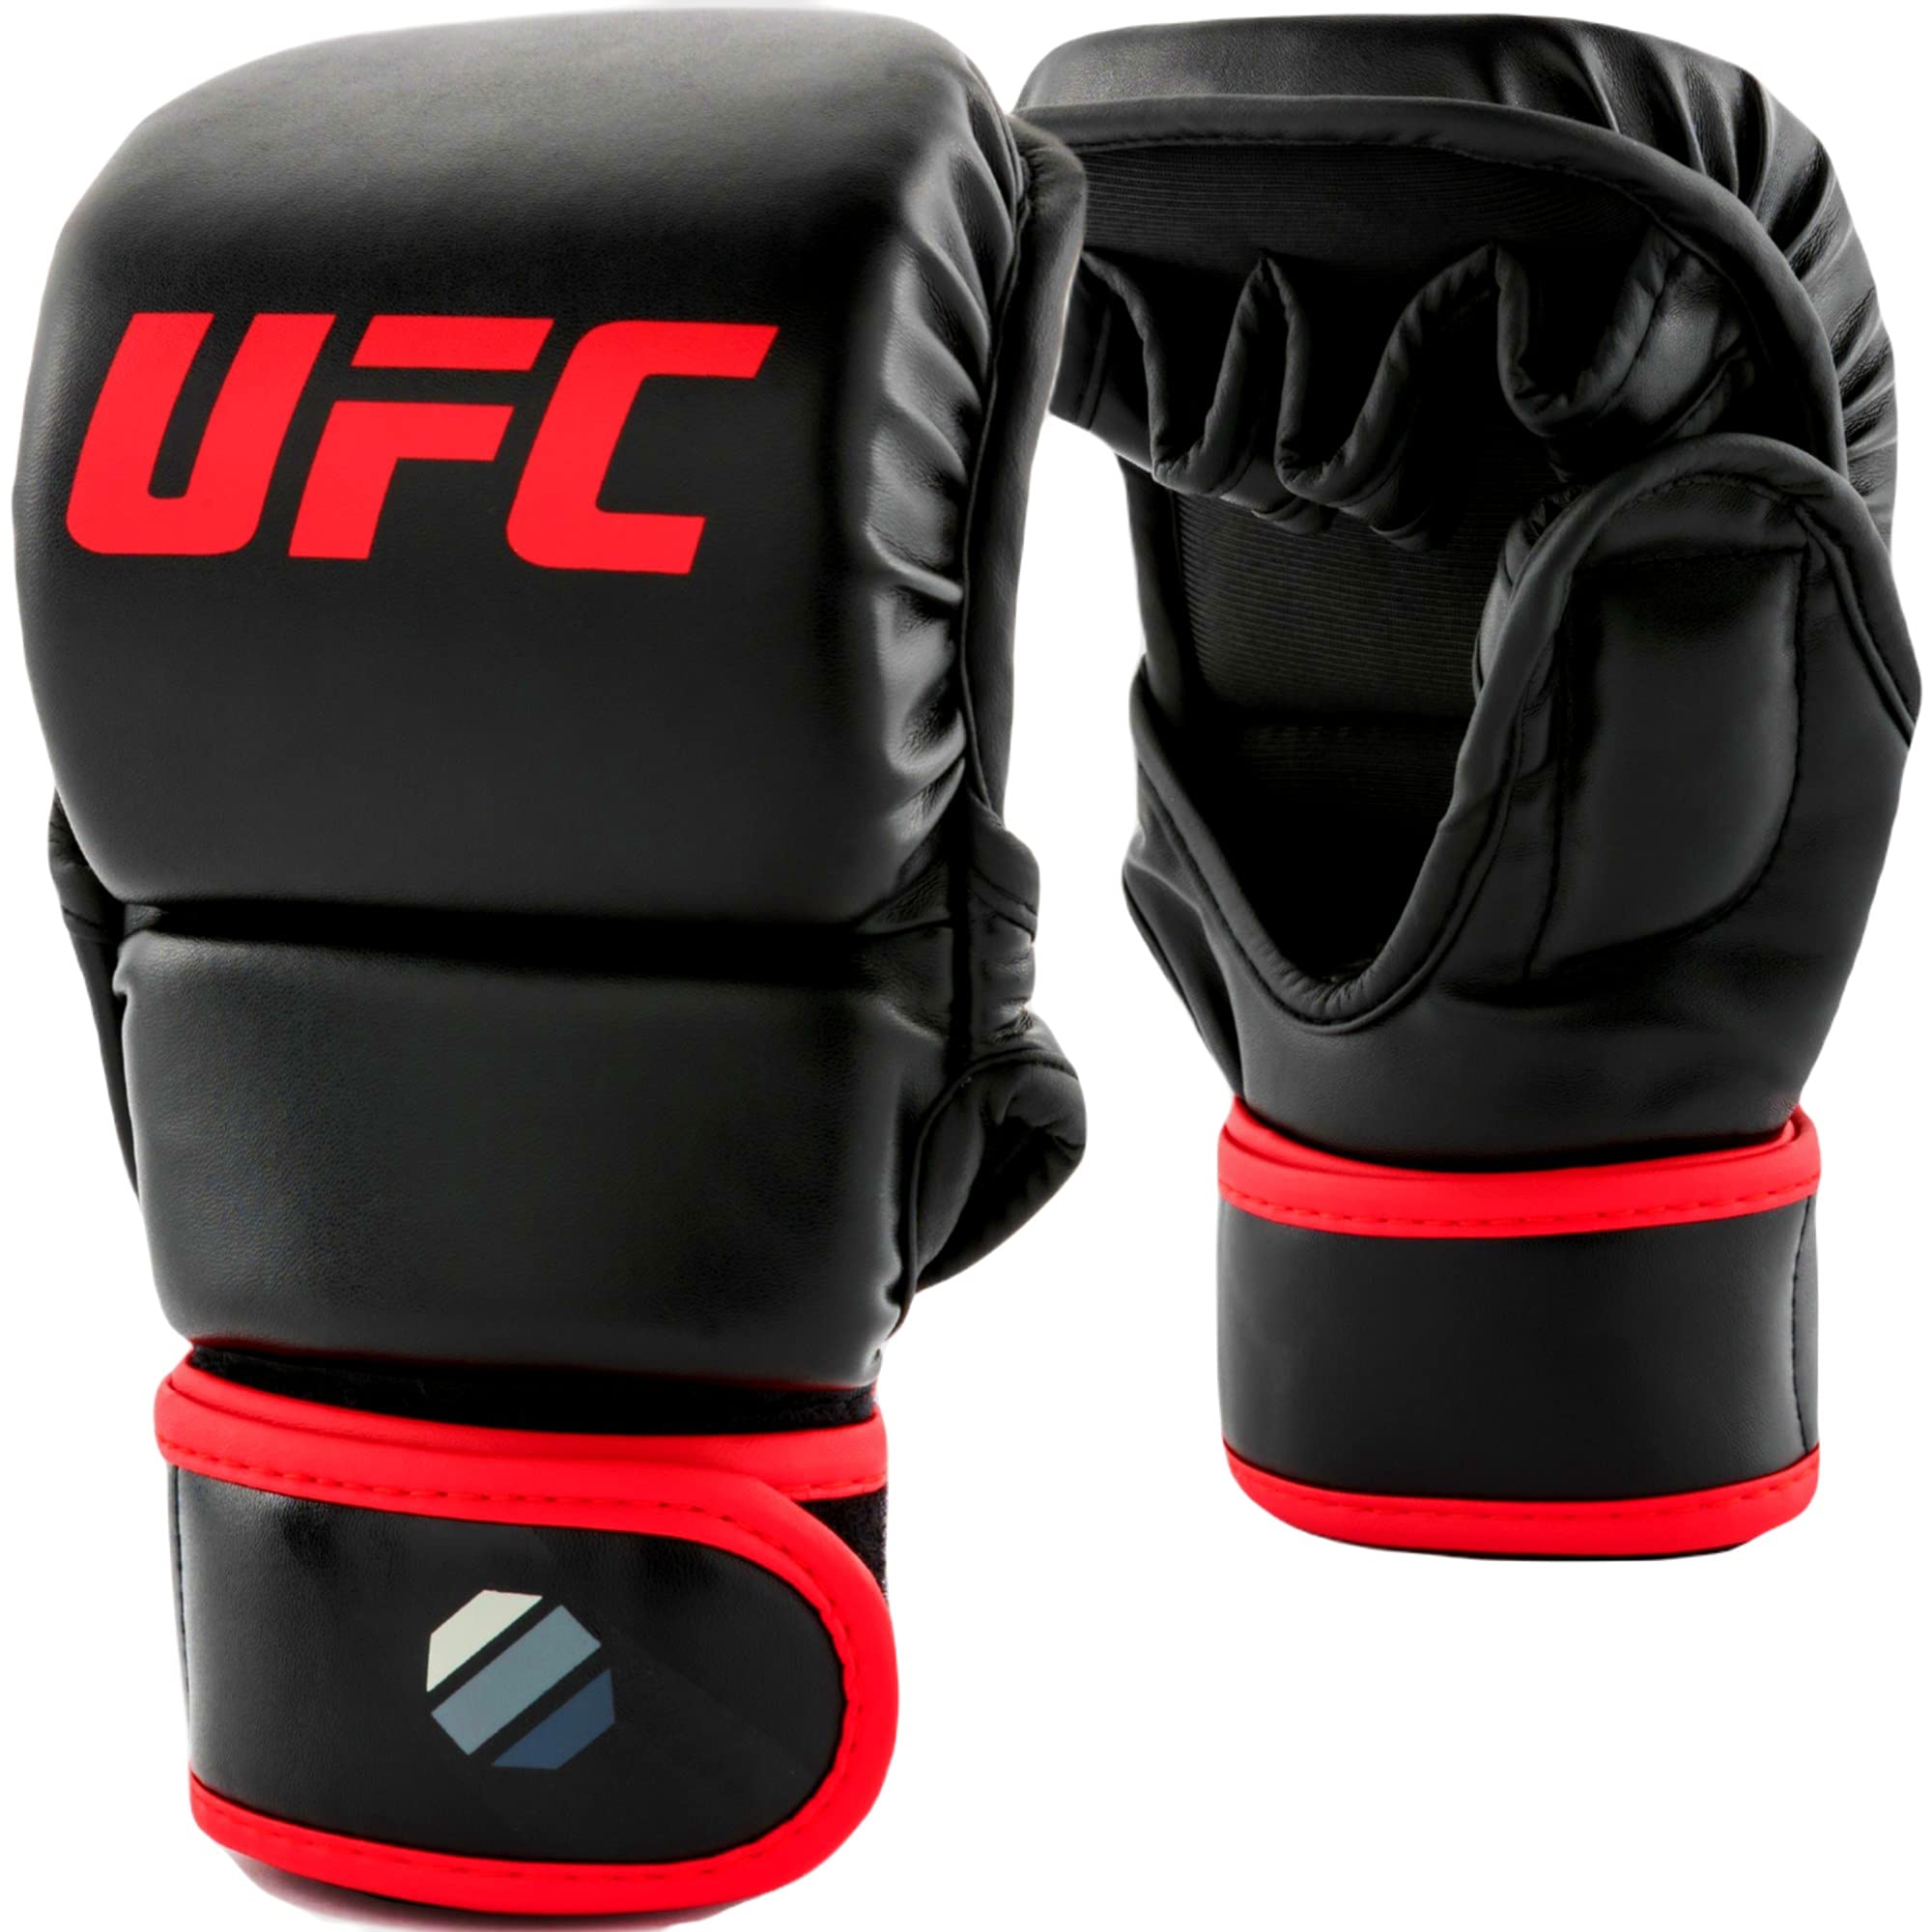 UFC 8oz MMA Sparring Gloves - L/XL - MMA Gloves, Black, Large/X-Large